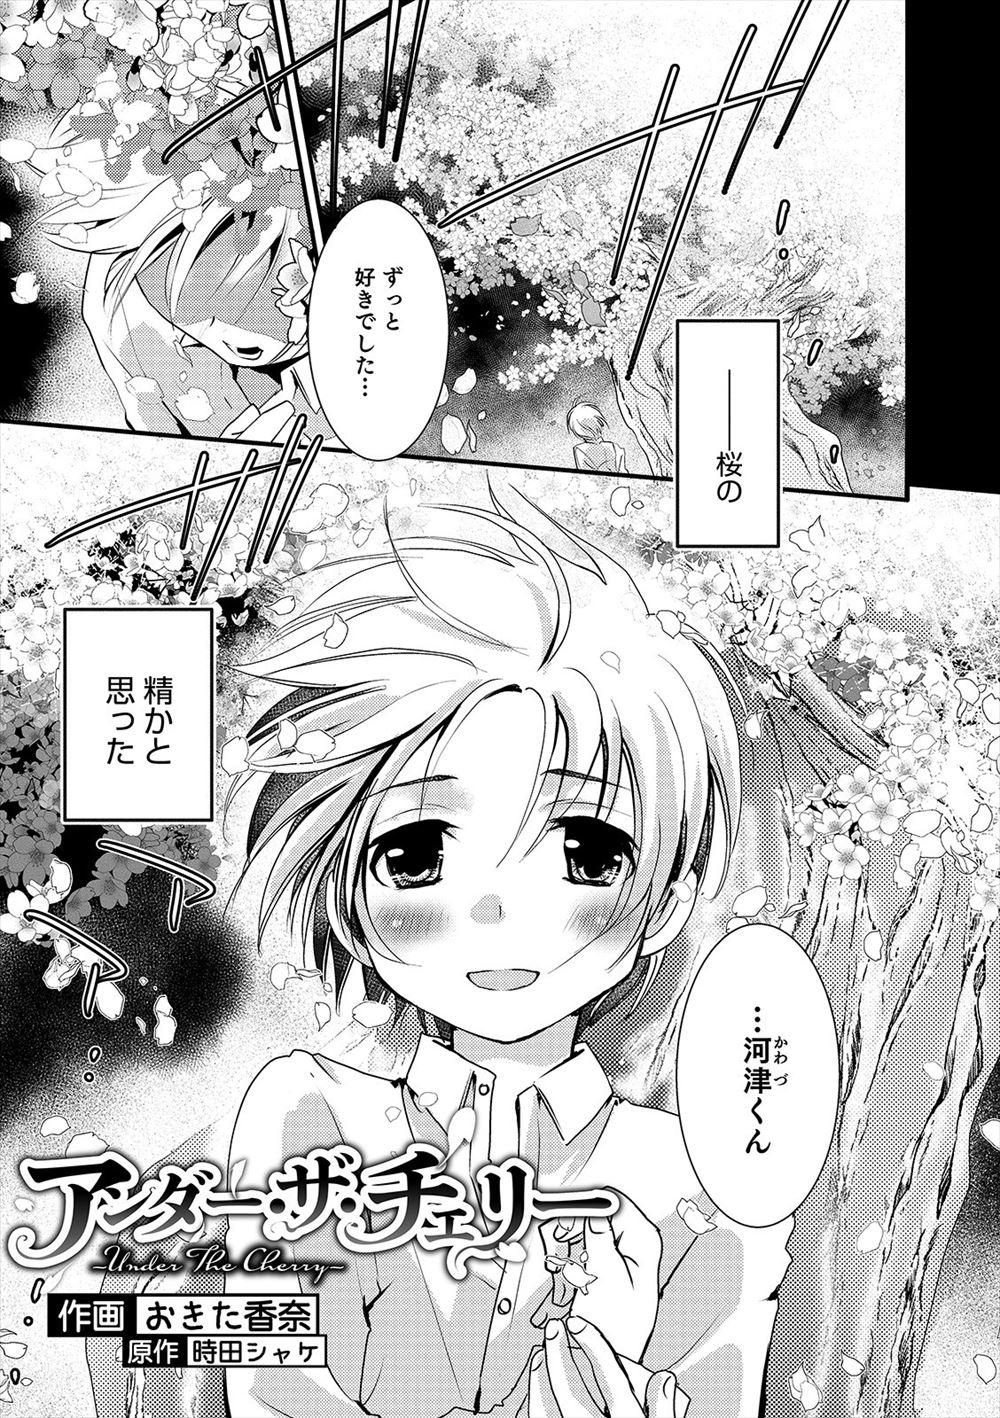 【エロ漫画】いじめから助けてやったらなつかれた男子が美少年から告白され、かわいすぎて桜の樹の下で激しくホモセックスしてしまったｗ